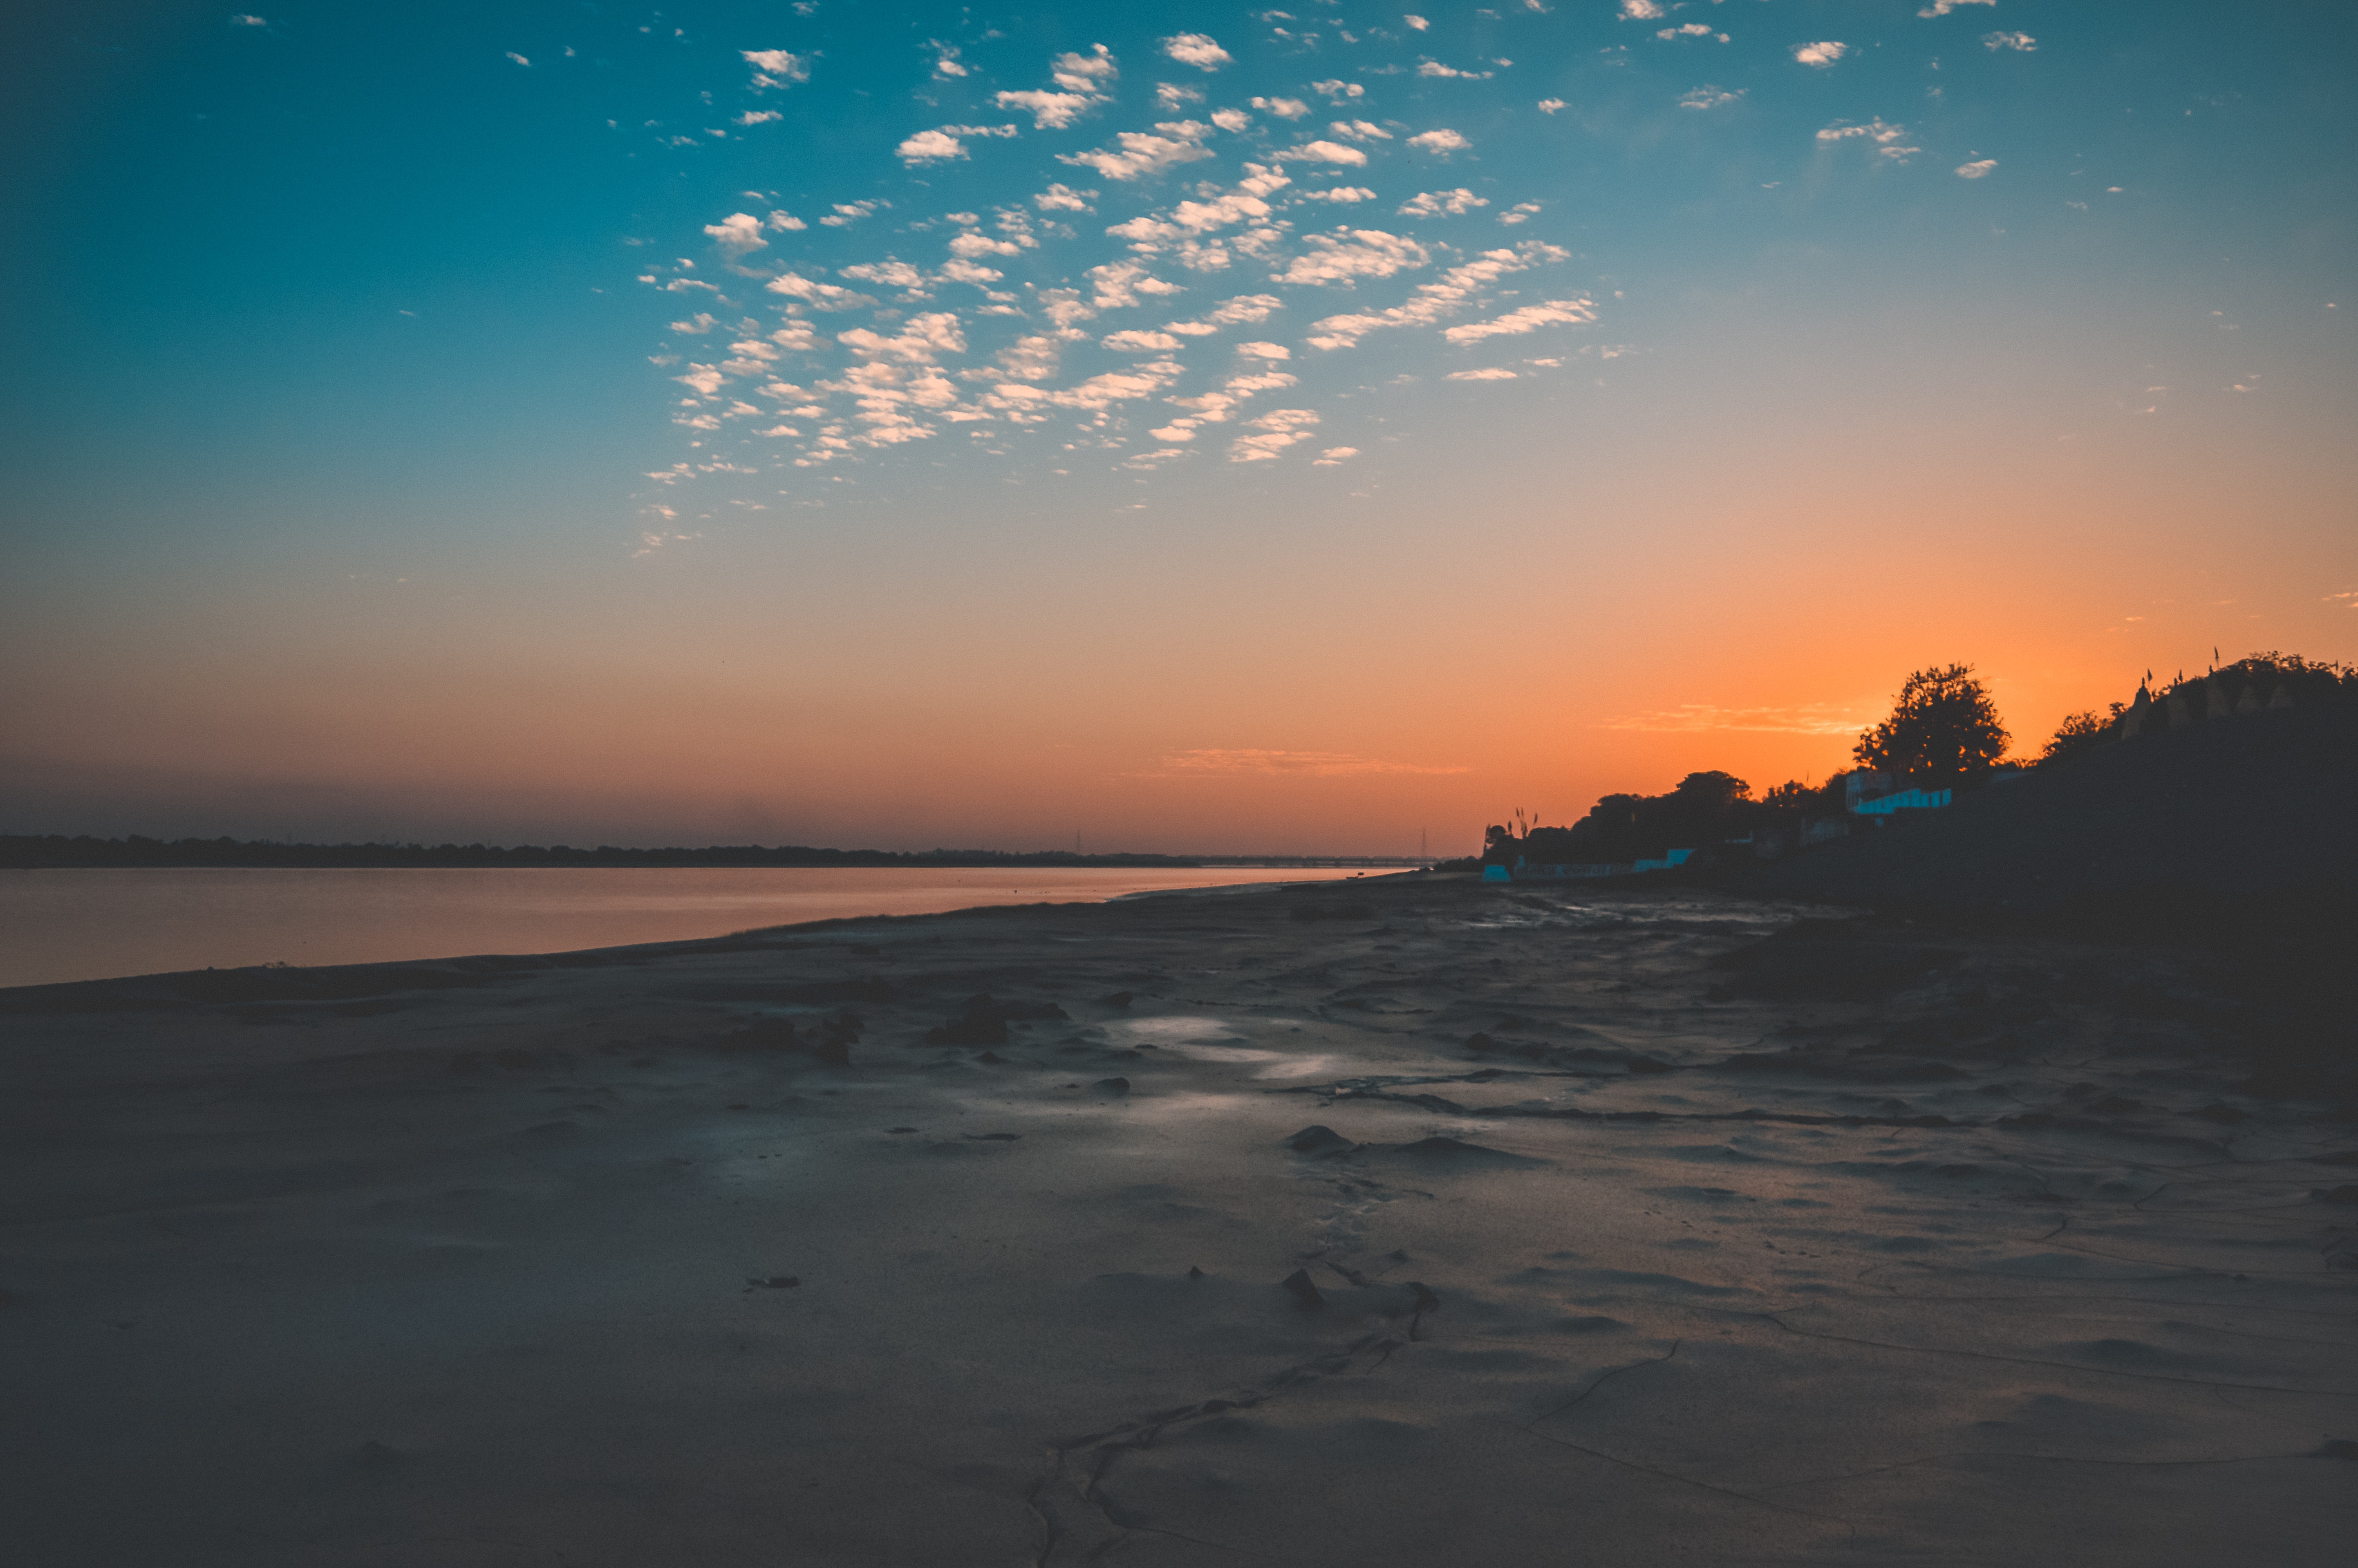 Seaside taken during sunset photo